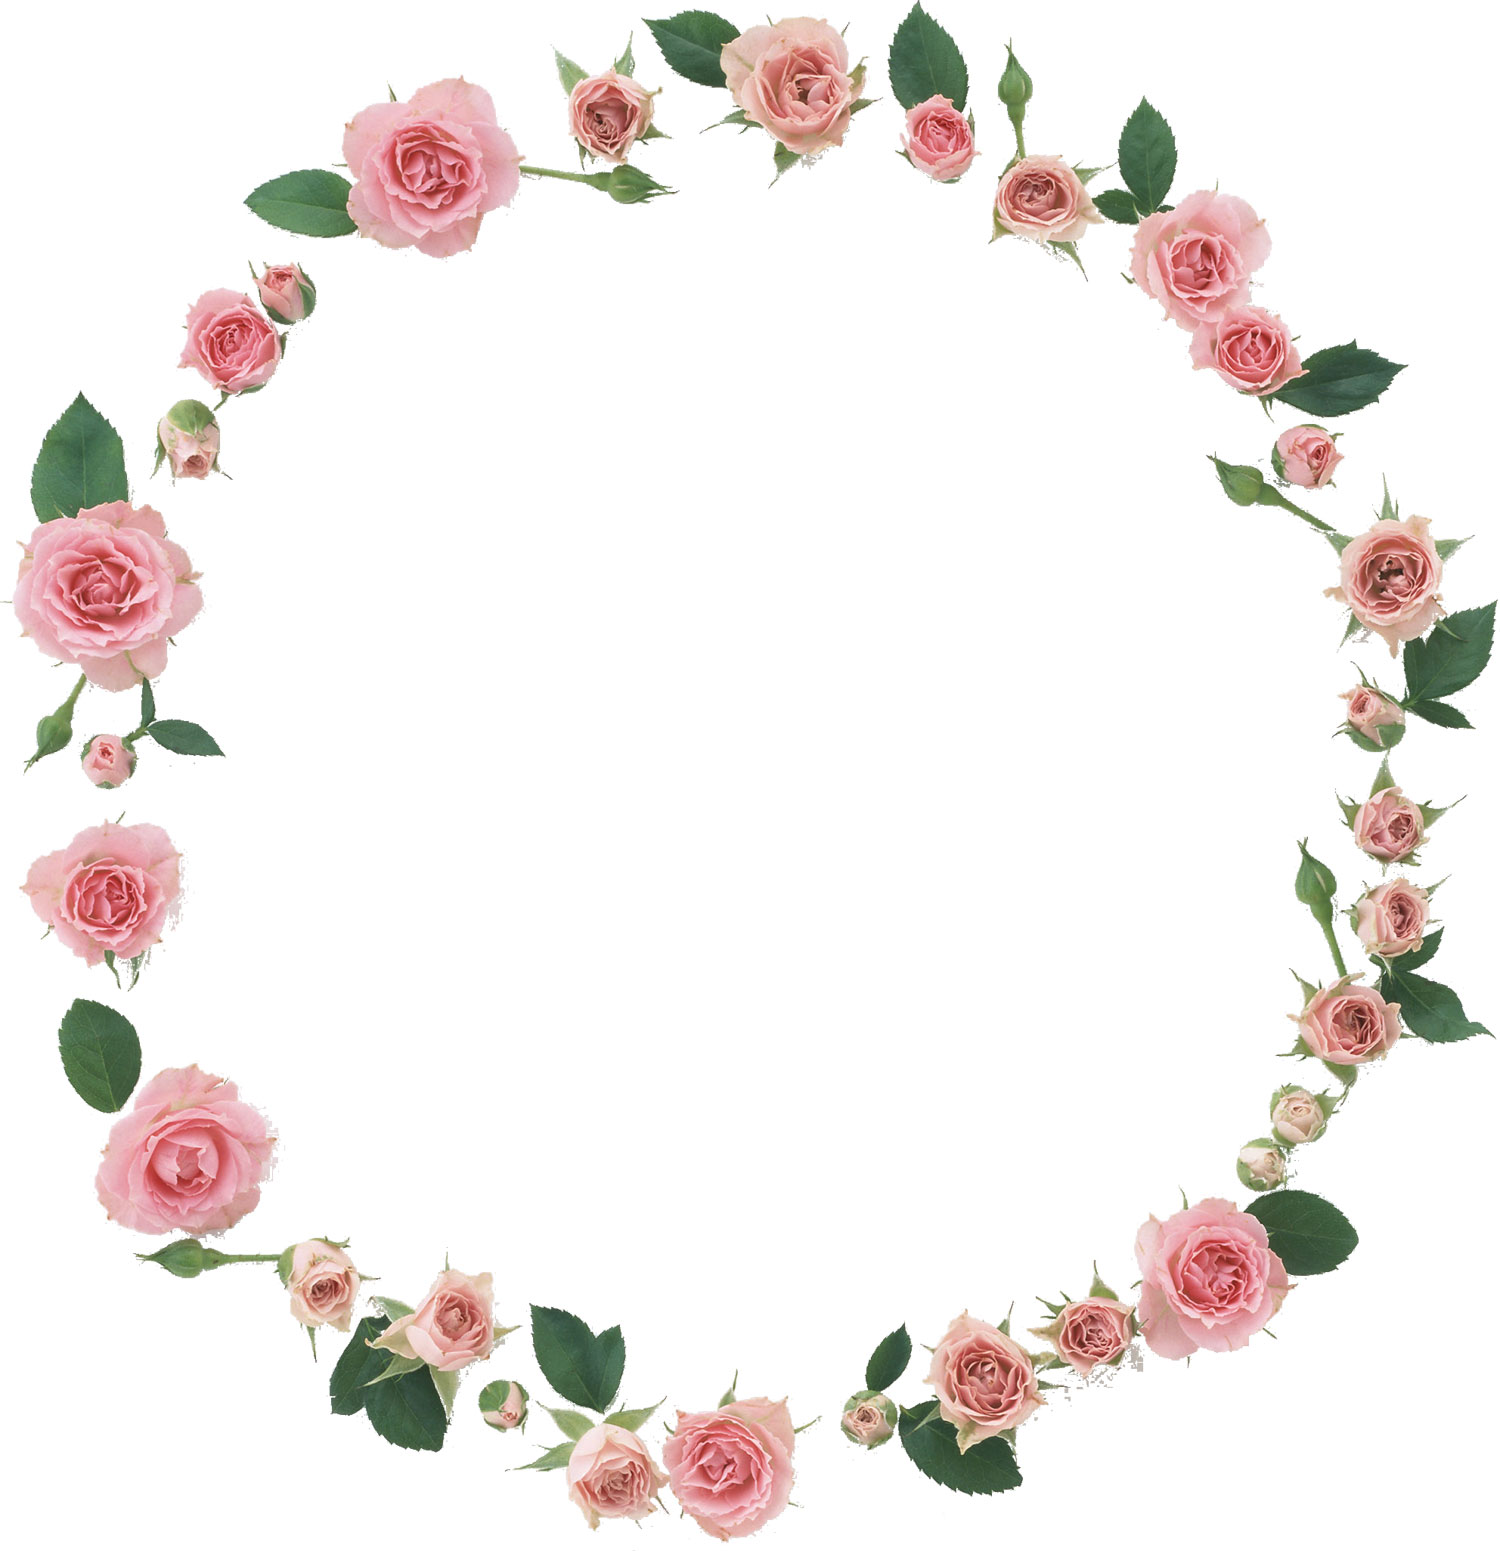 花や葉の写真 画像 フリー素材 フレーム枠no 1016 ピンクのバラ 葉 輪